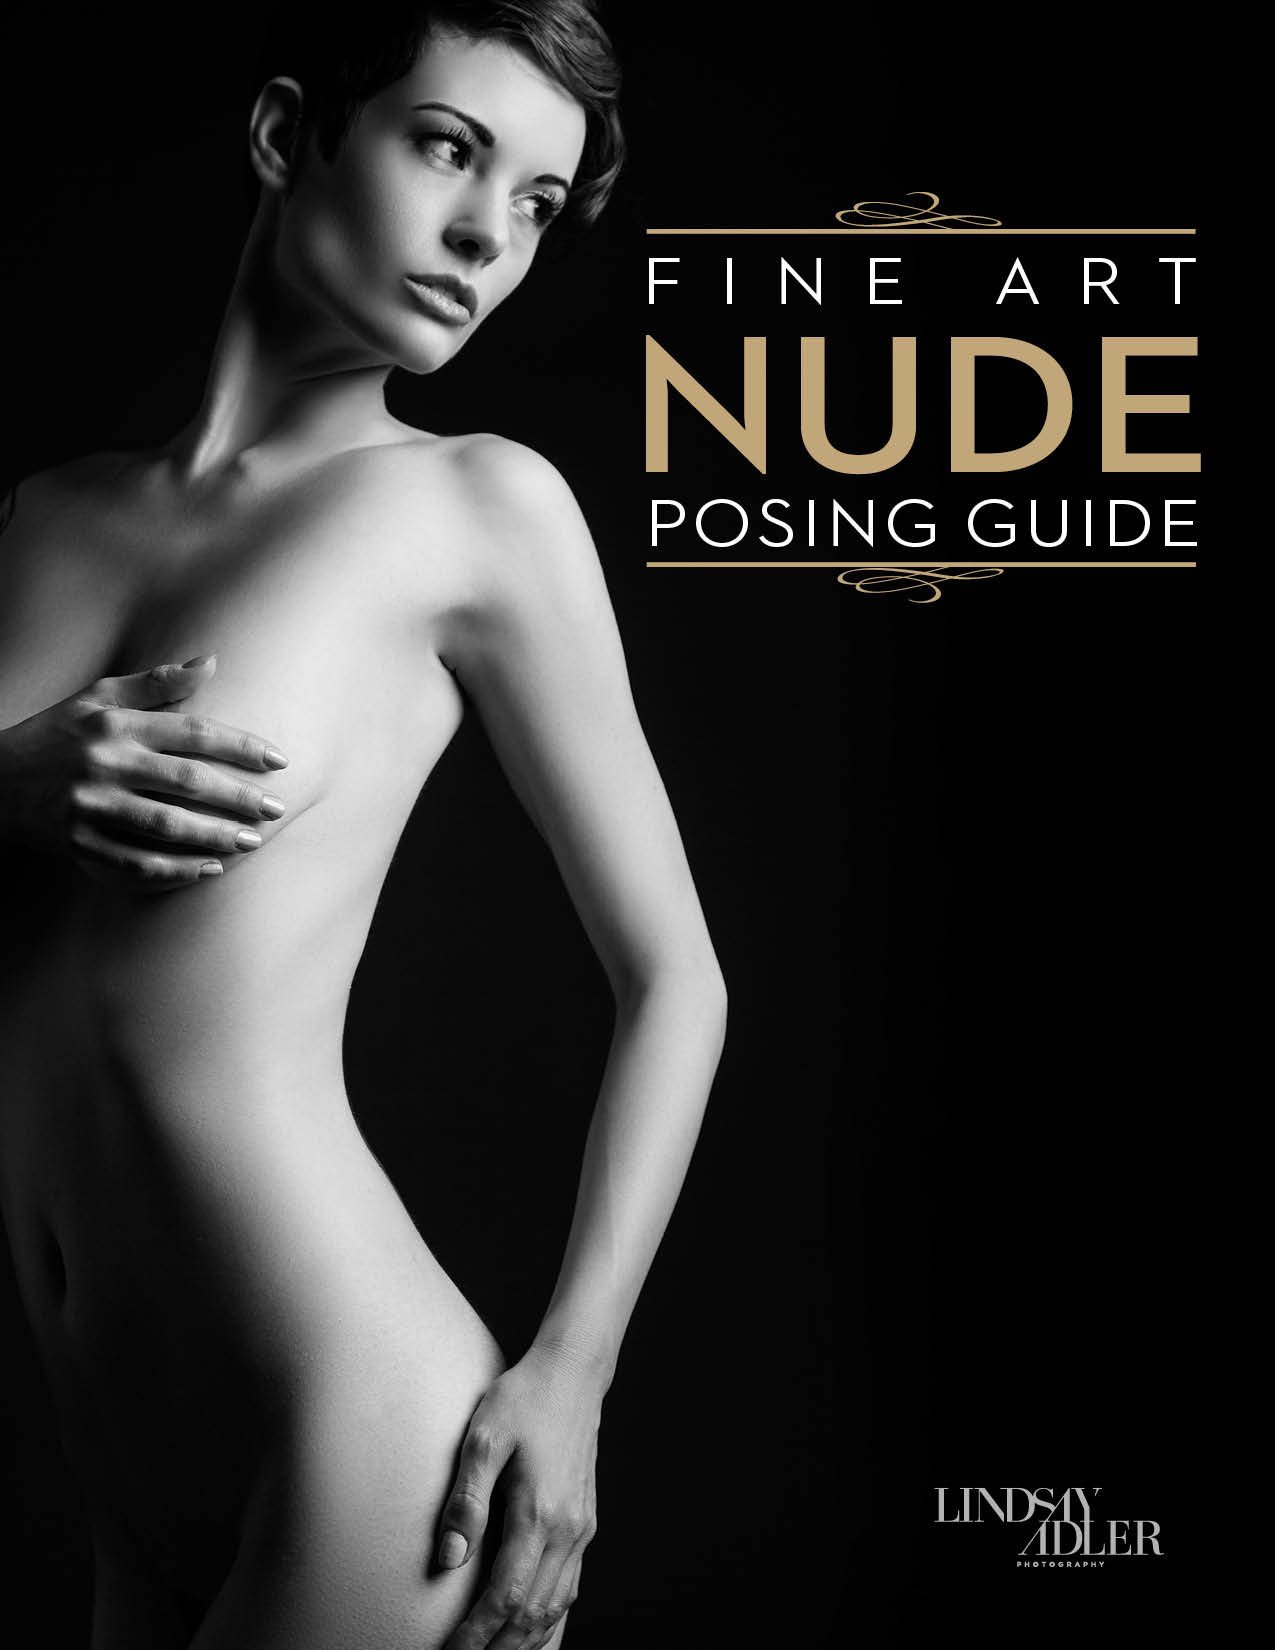 Lindsay Adler's Fine Art Nude Posing Guide